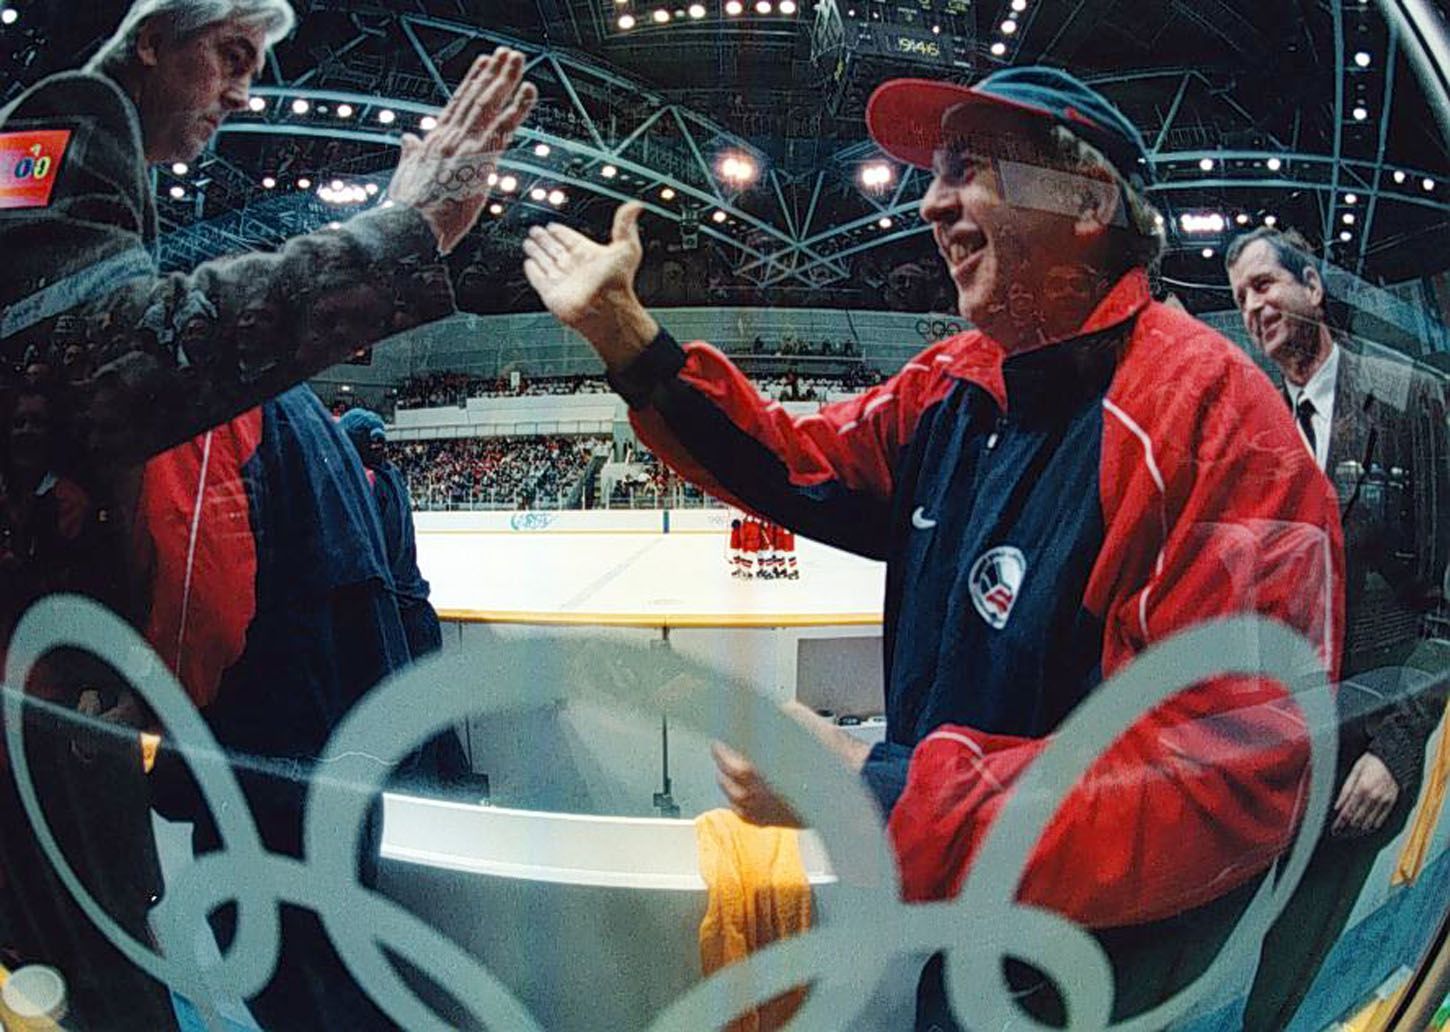 Archivní snímky z ZOH Nagano 1998 - hokej. Ivan Hlinka